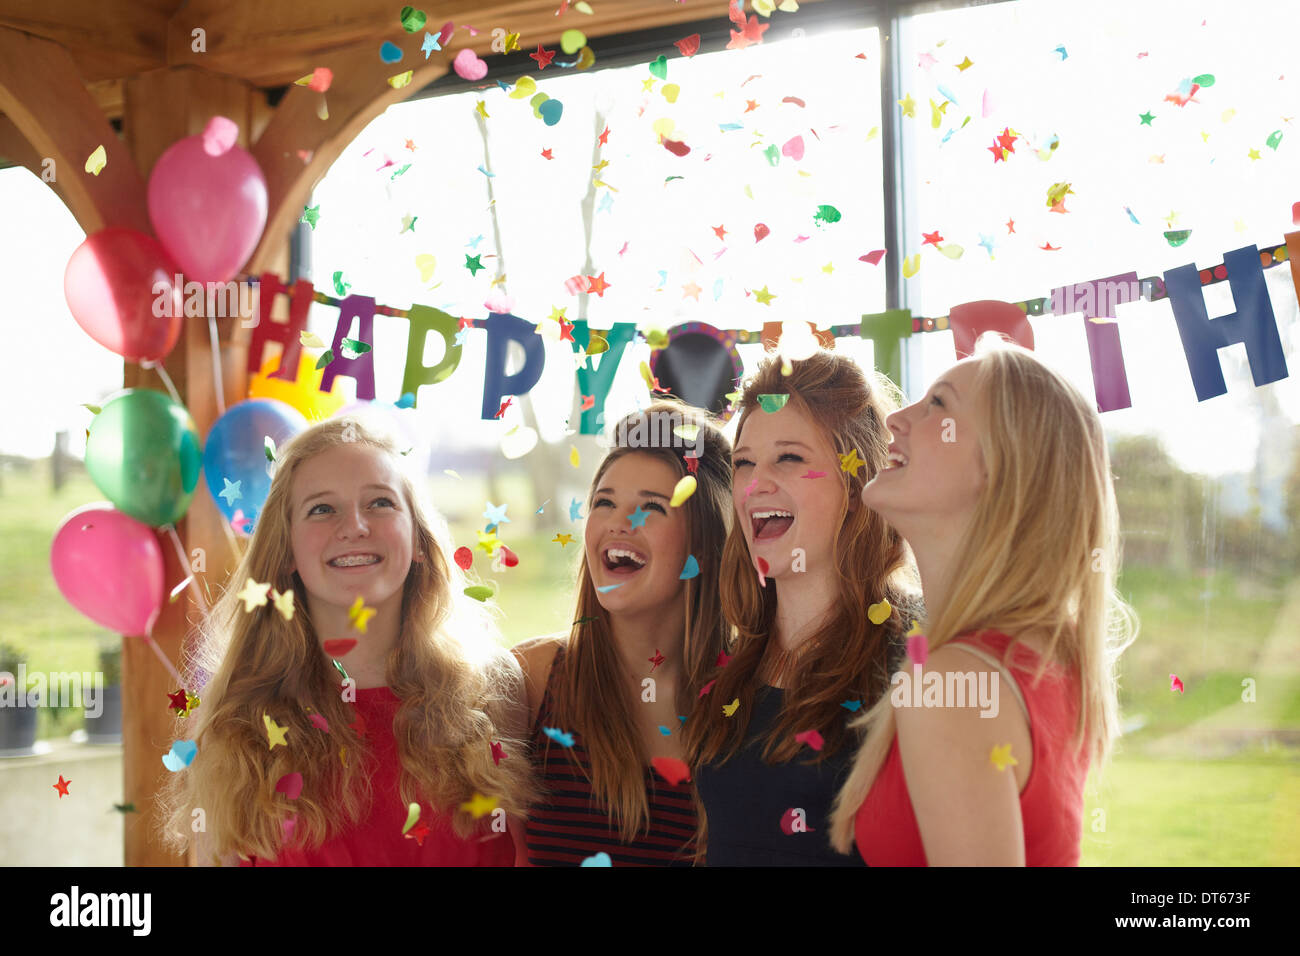 Quatre adolescentes profitant des confettis à Birthday party Banque D'Images